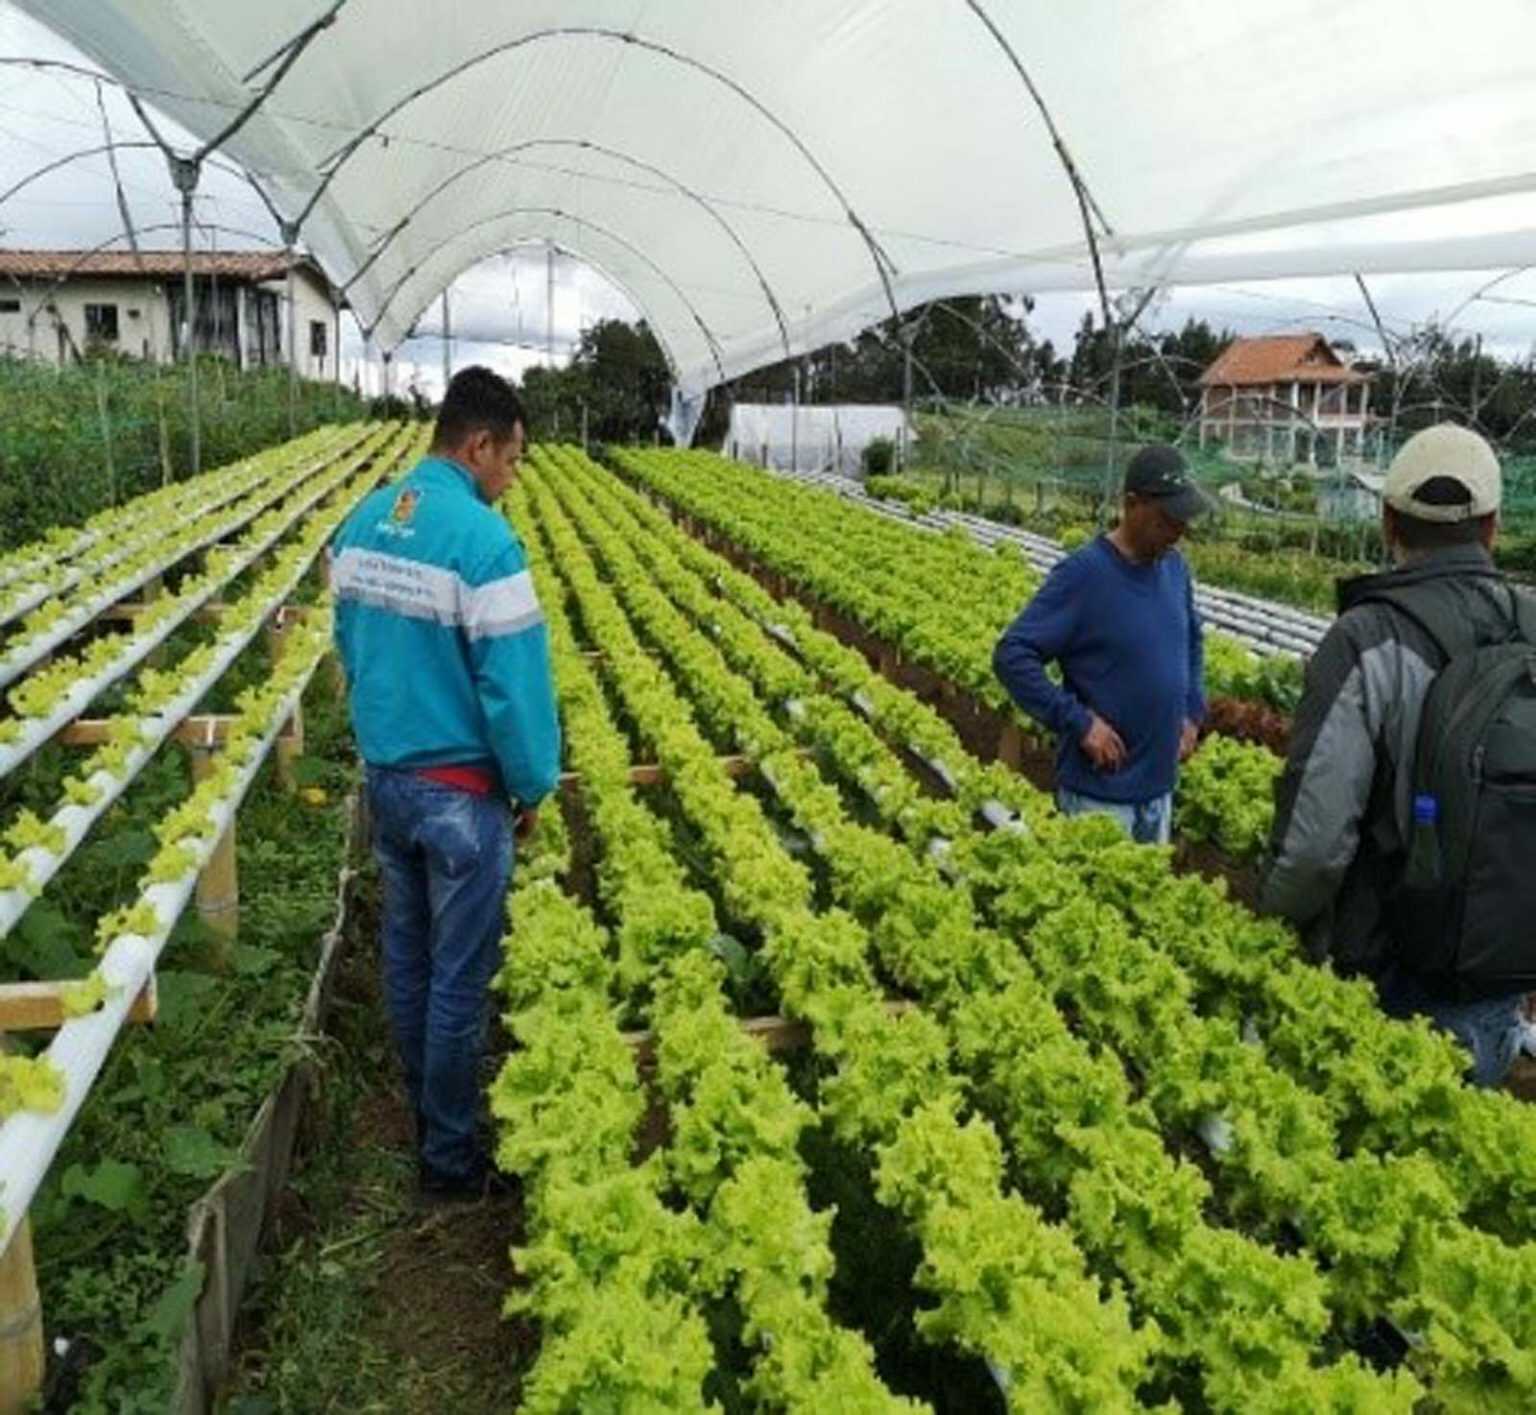 Encuentre en Colombia asesoramiento para construcción de invernaderos, y tecnificación del campo, Somos Gestión agroambiental. Contáctenos.